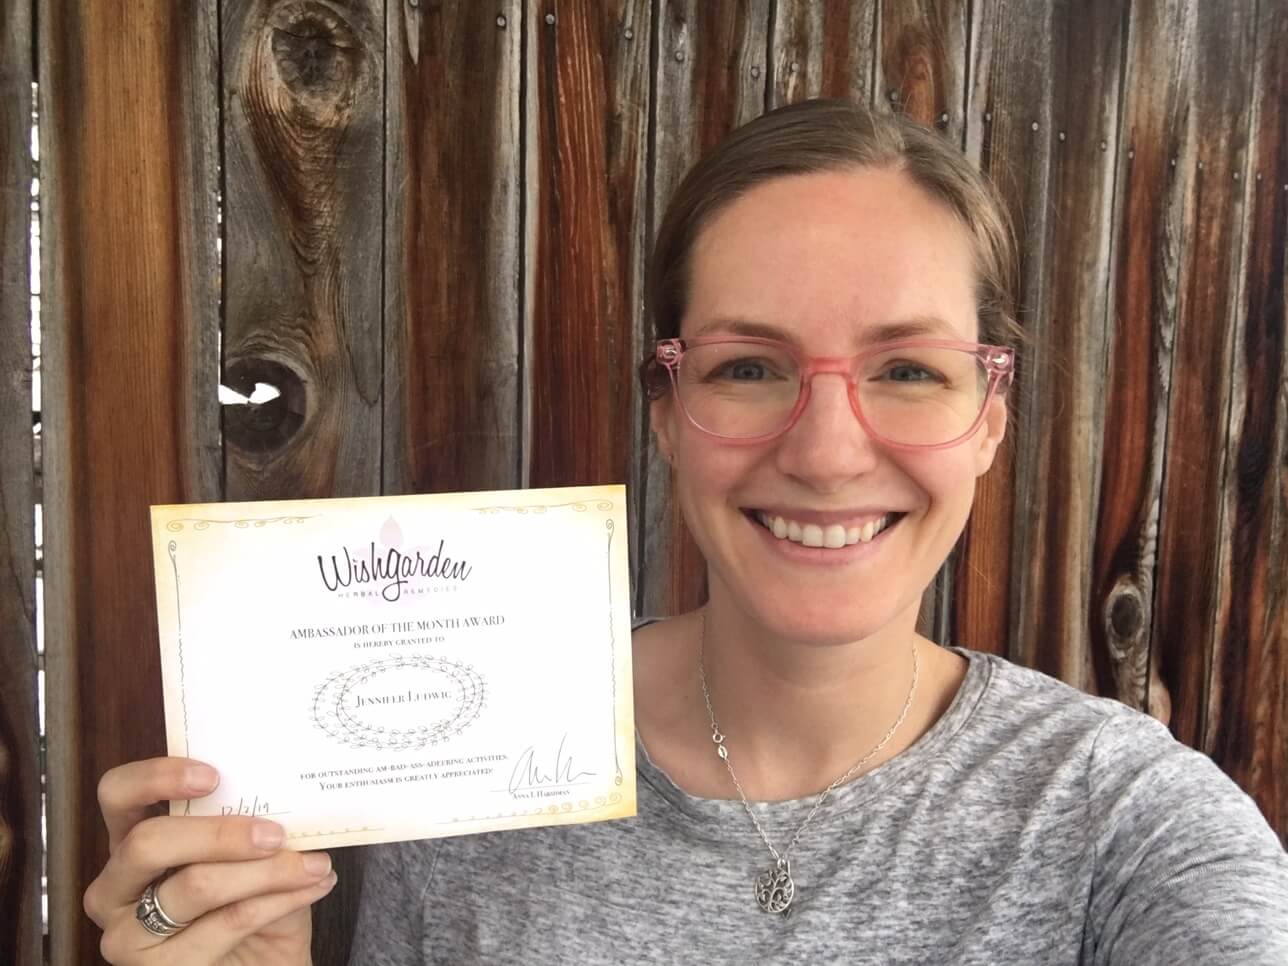 Una entrevista con Jenni Ludwig, embajadora del mes de WishGarden